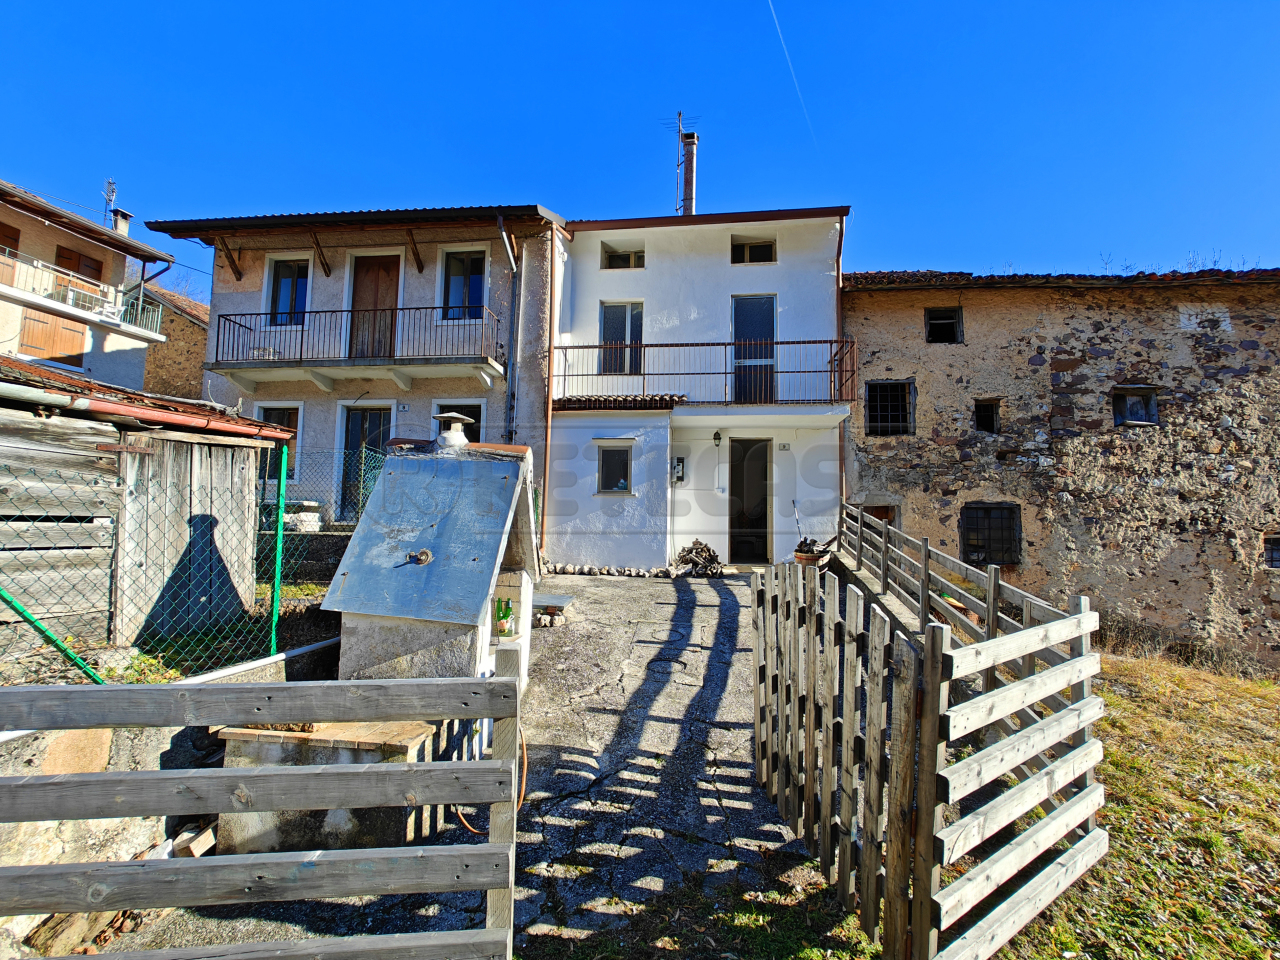 Soluzione Semindipendente in vendita a Recoaro Terme, 7 locali, prezzo € 45.000 | PortaleAgenzieImmobiliari.it